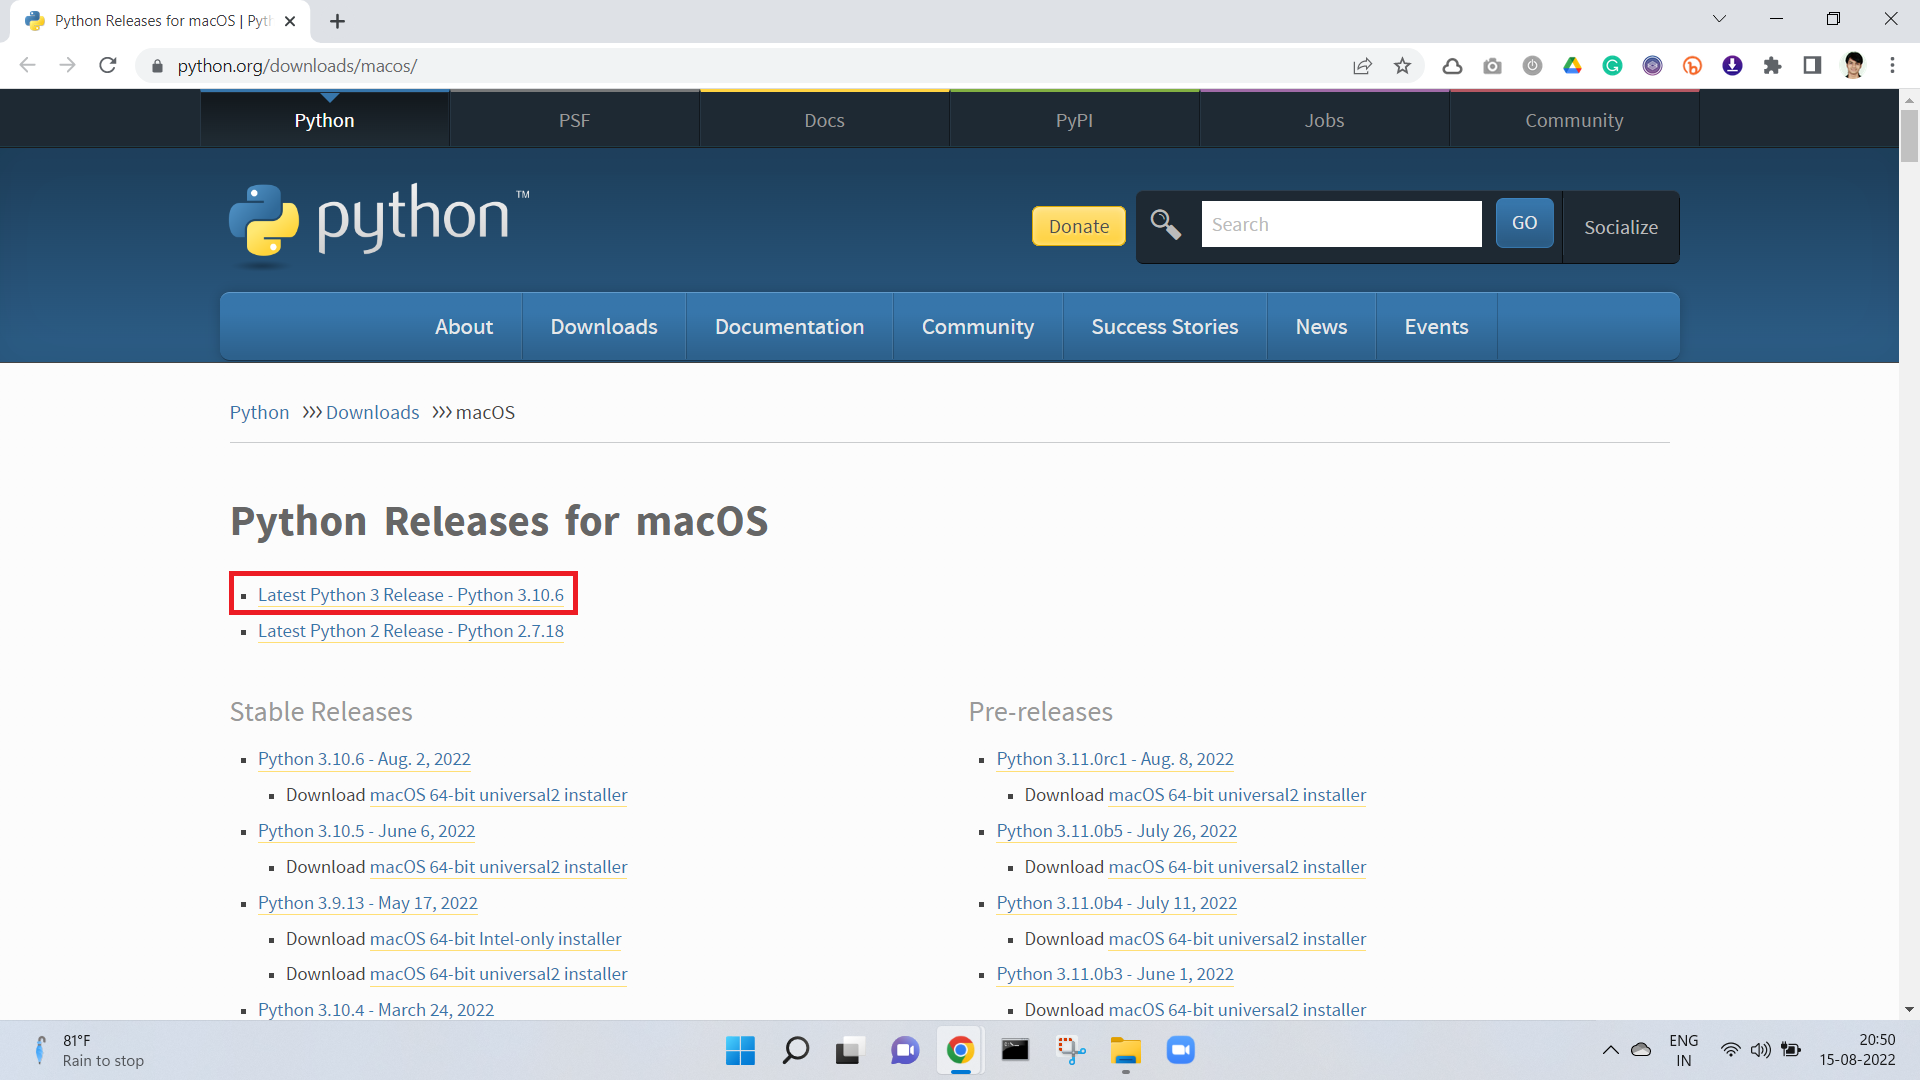 Go to python.org (Downloads > MacOS)